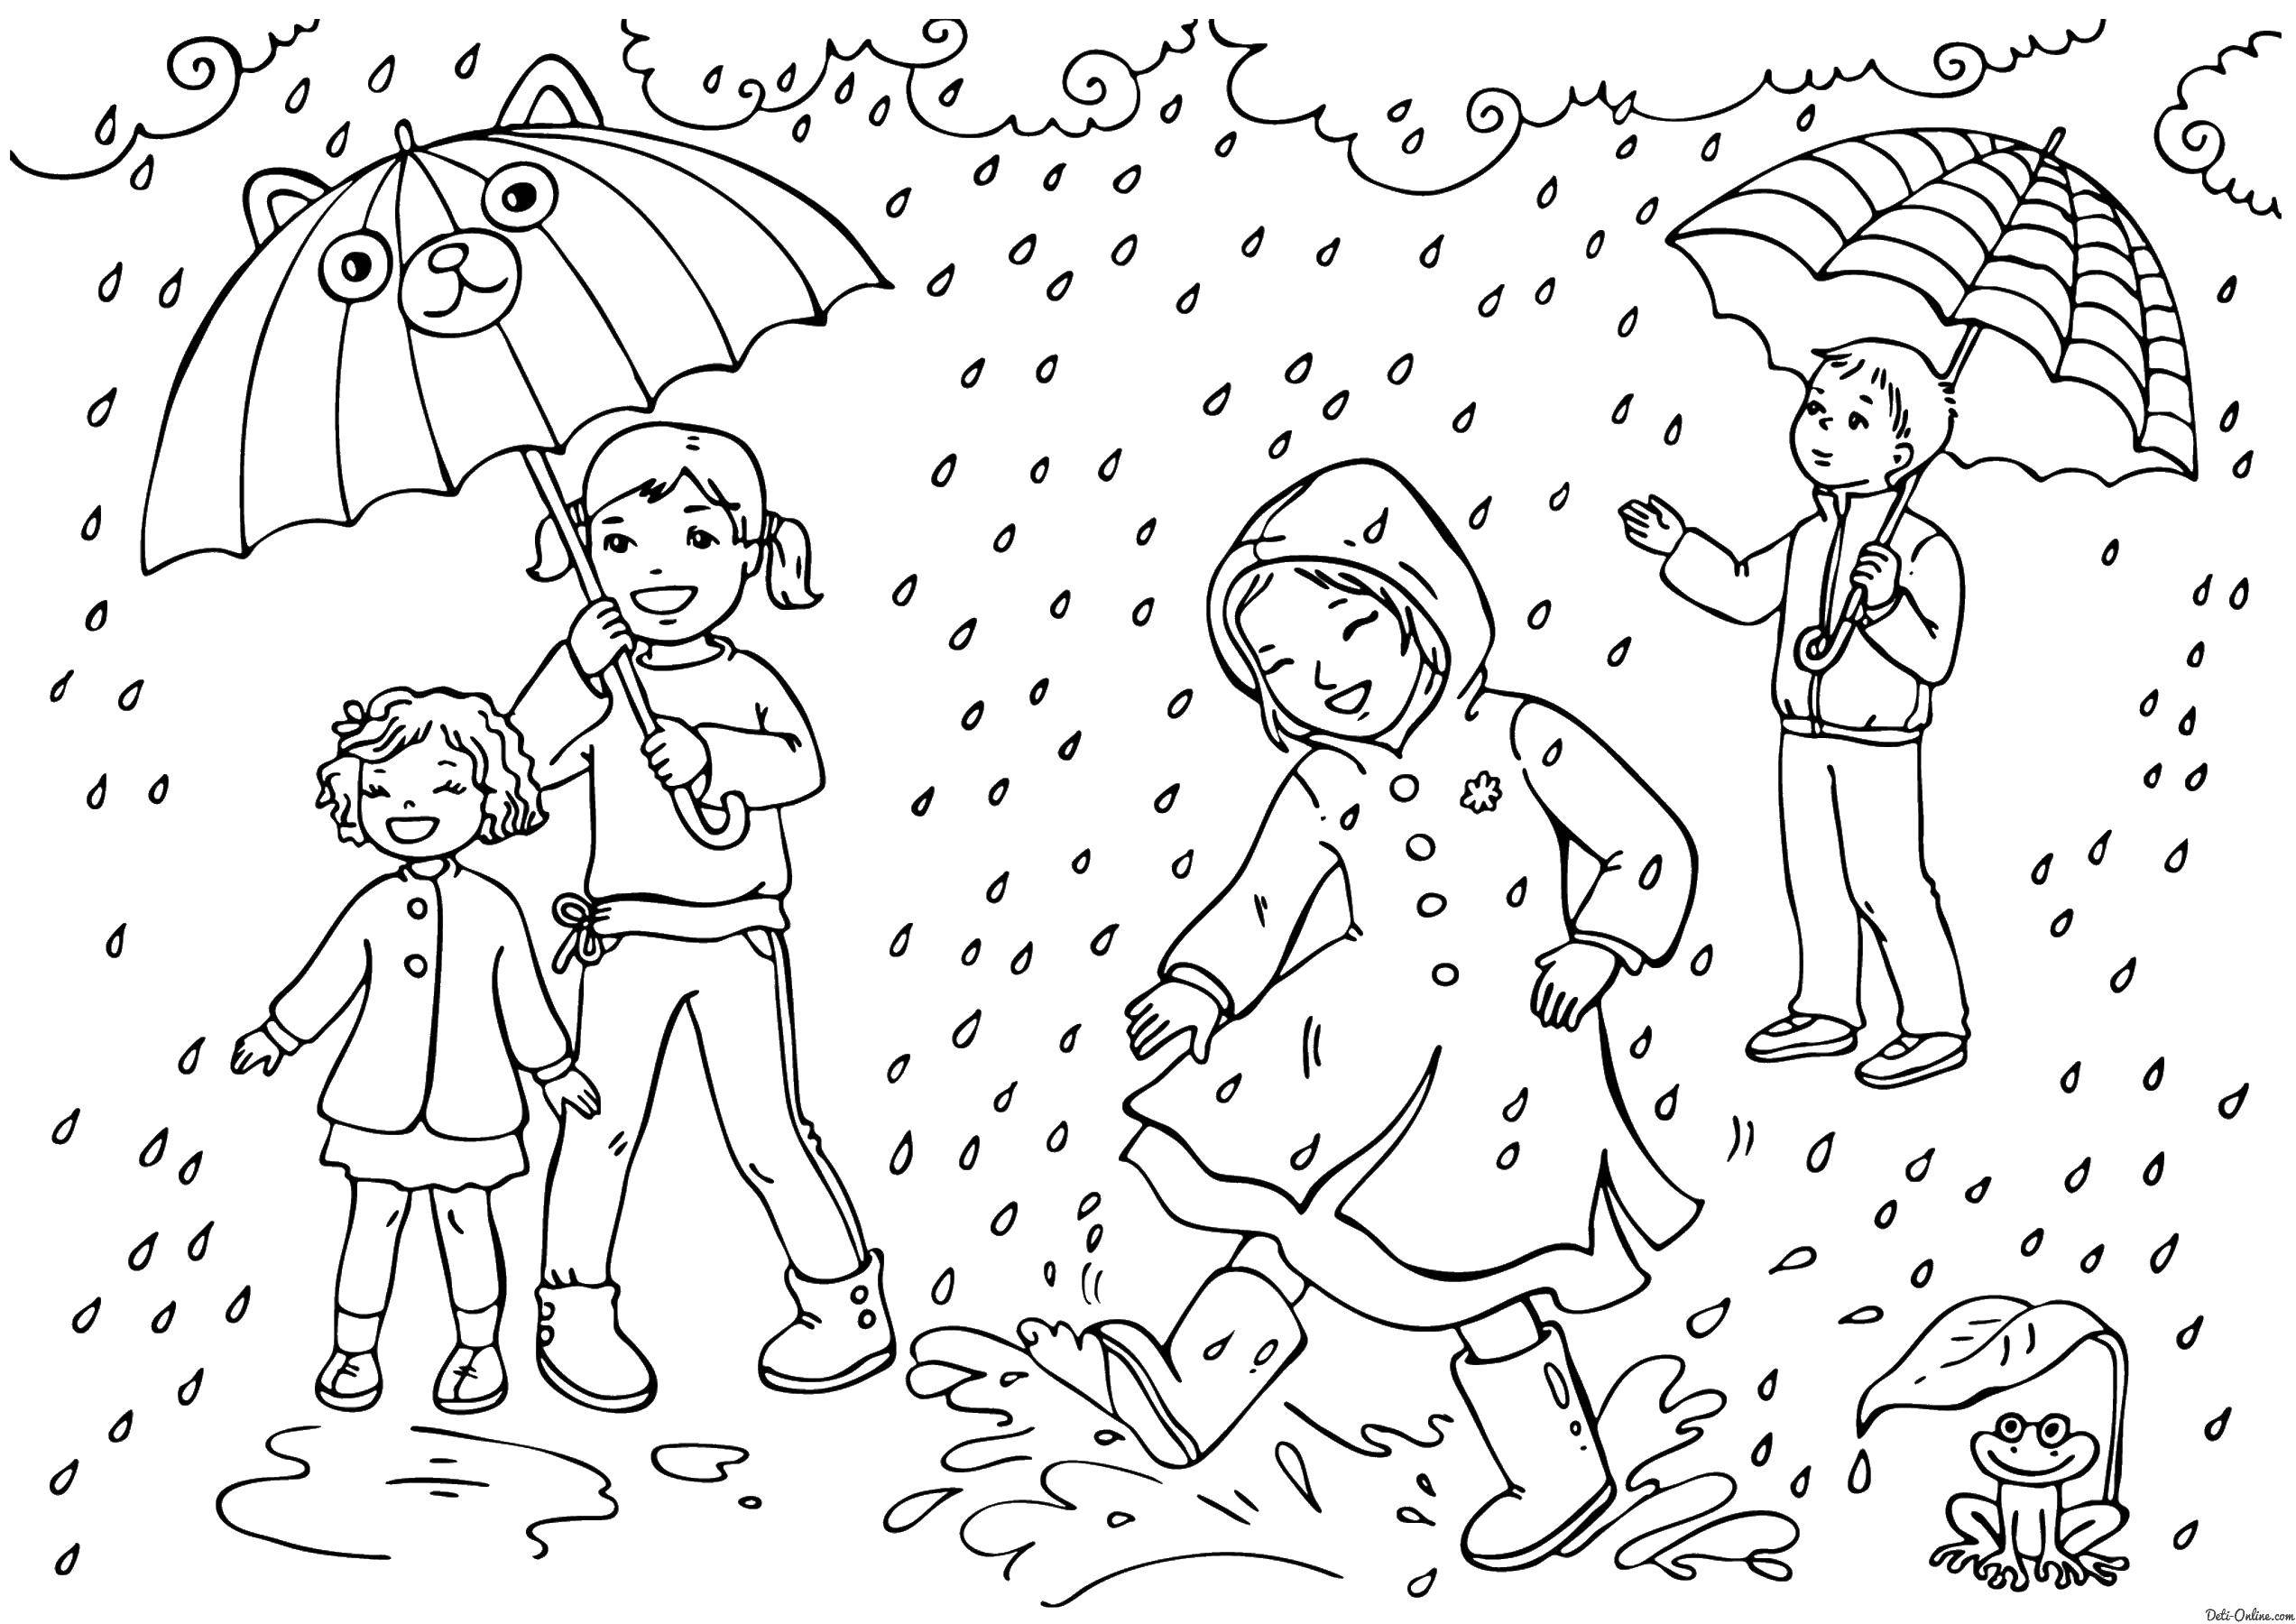 Опис: розмальовки  Діти гуляють під дощем. Категорія: Люди. Теги:  діти, дощ.